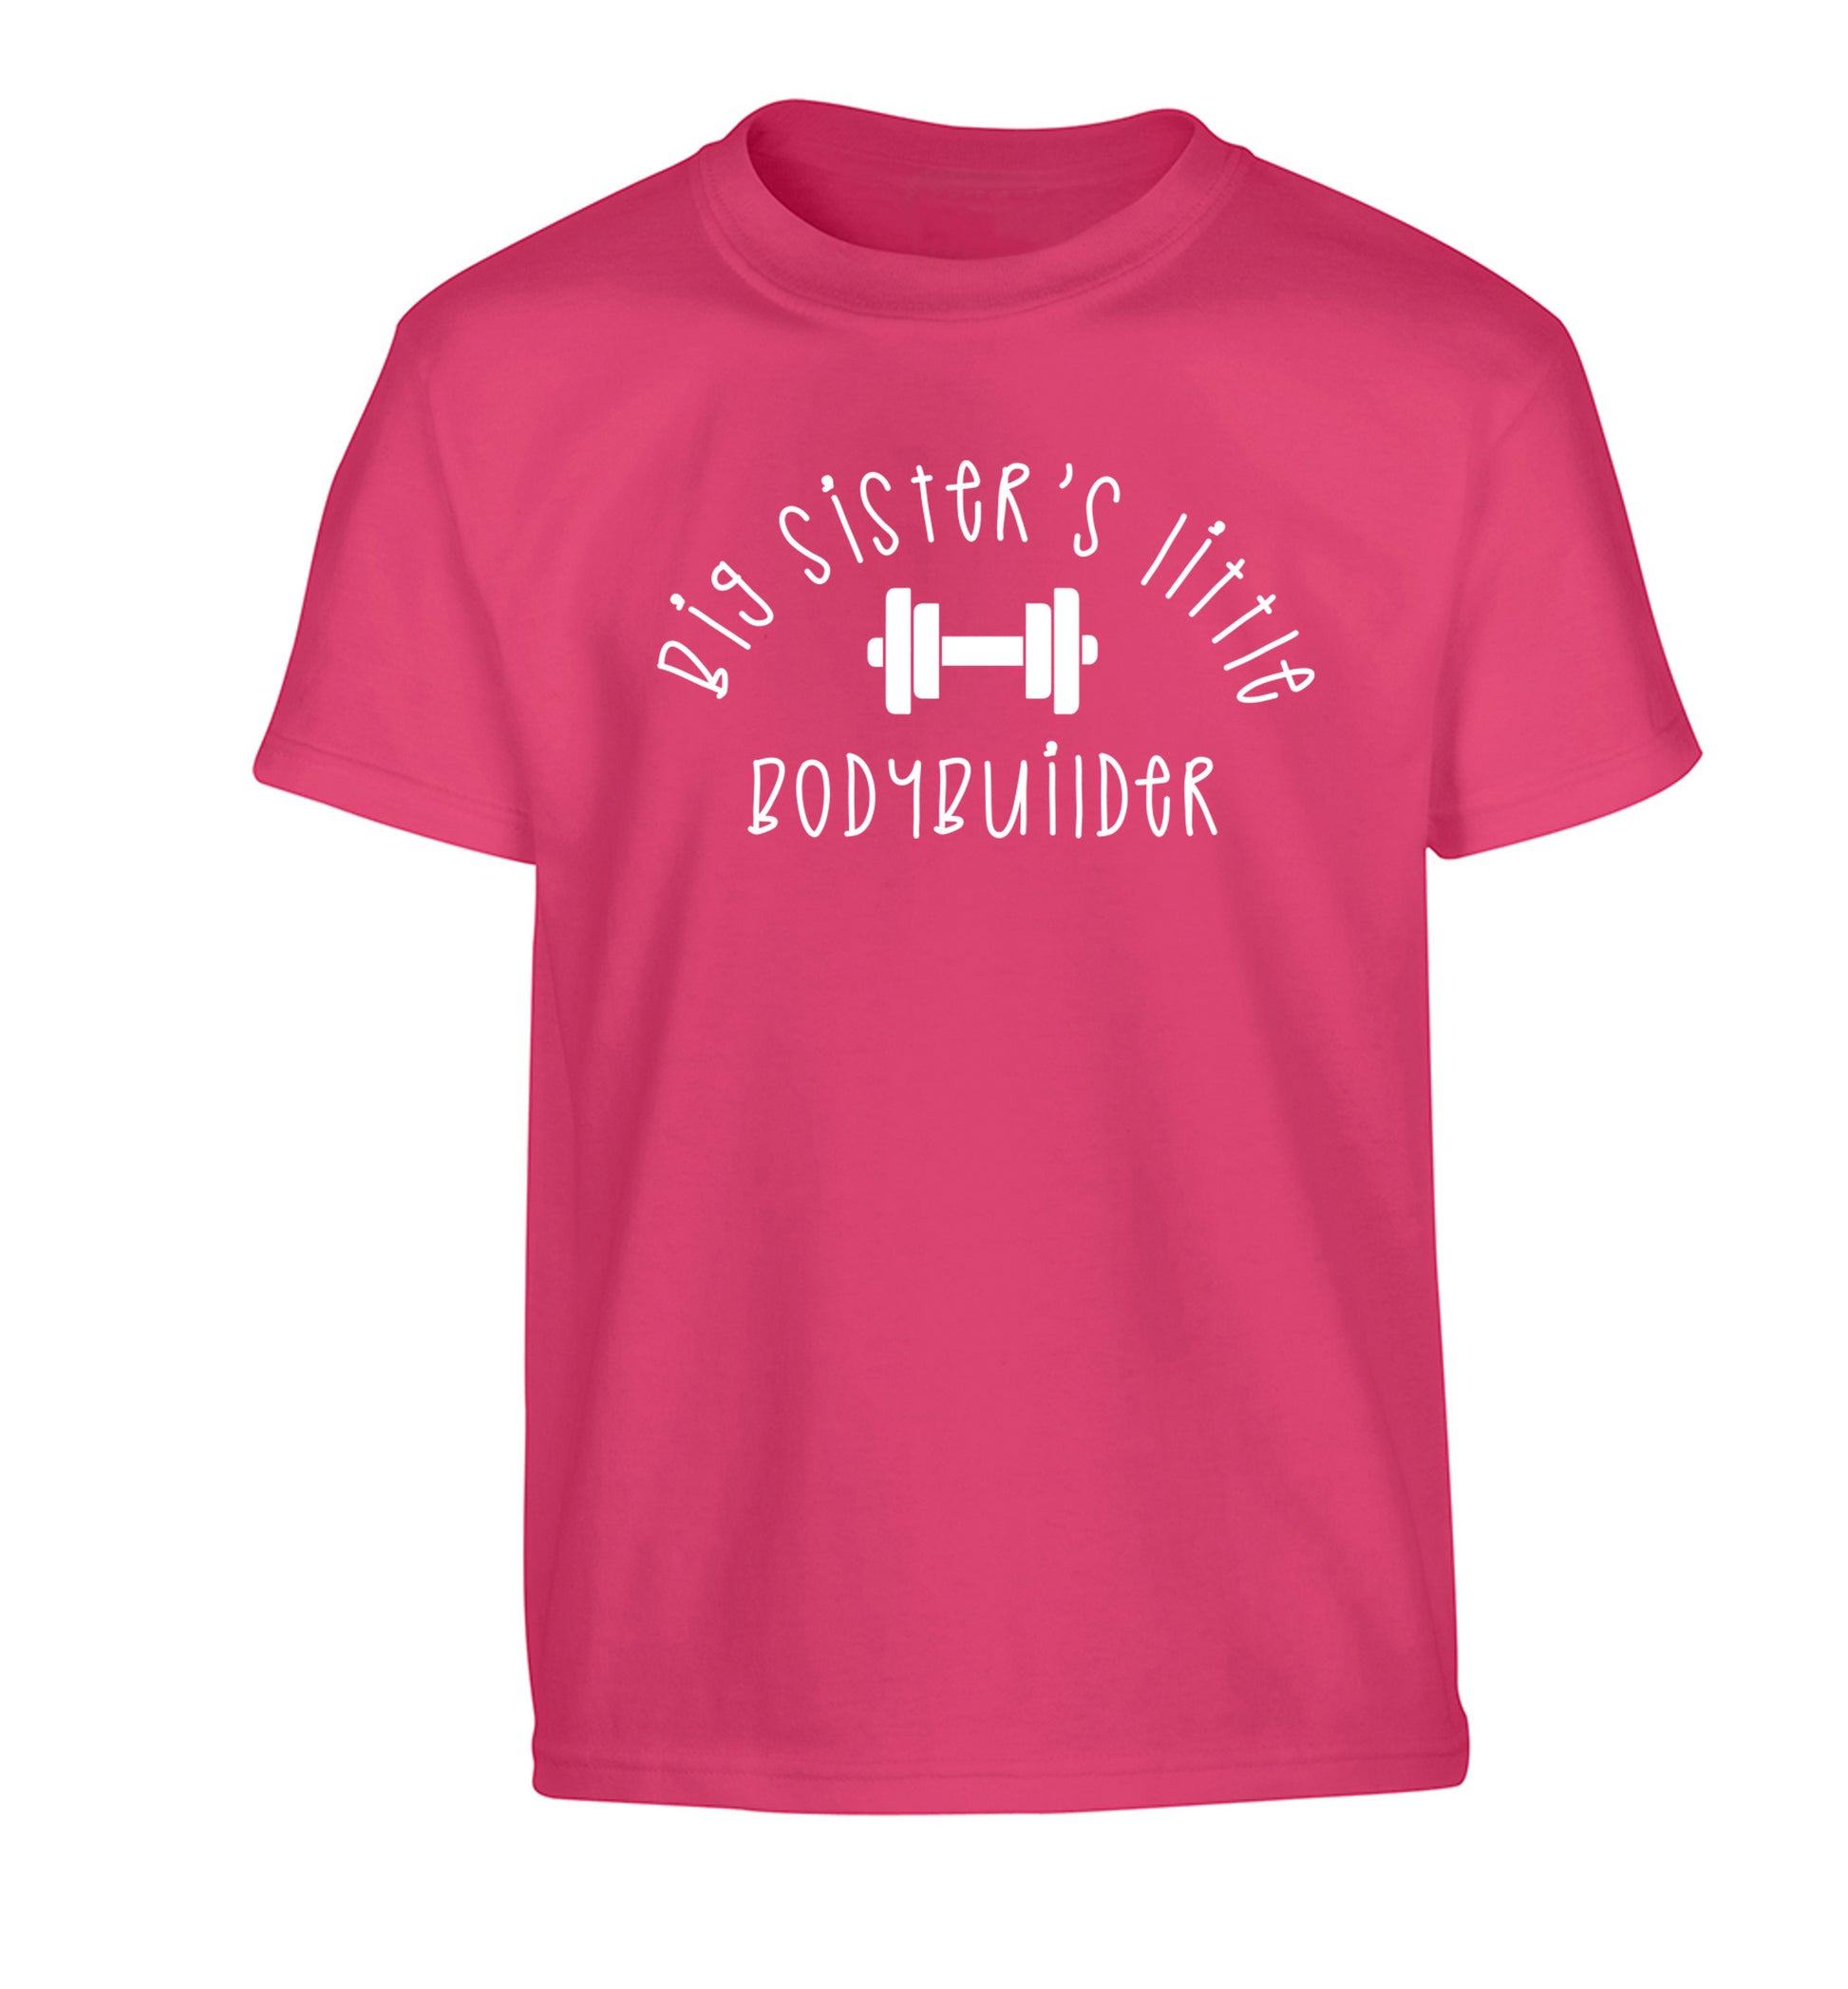 Big sister's little bodybuilder Children's pink Tshirt 12-14 Years